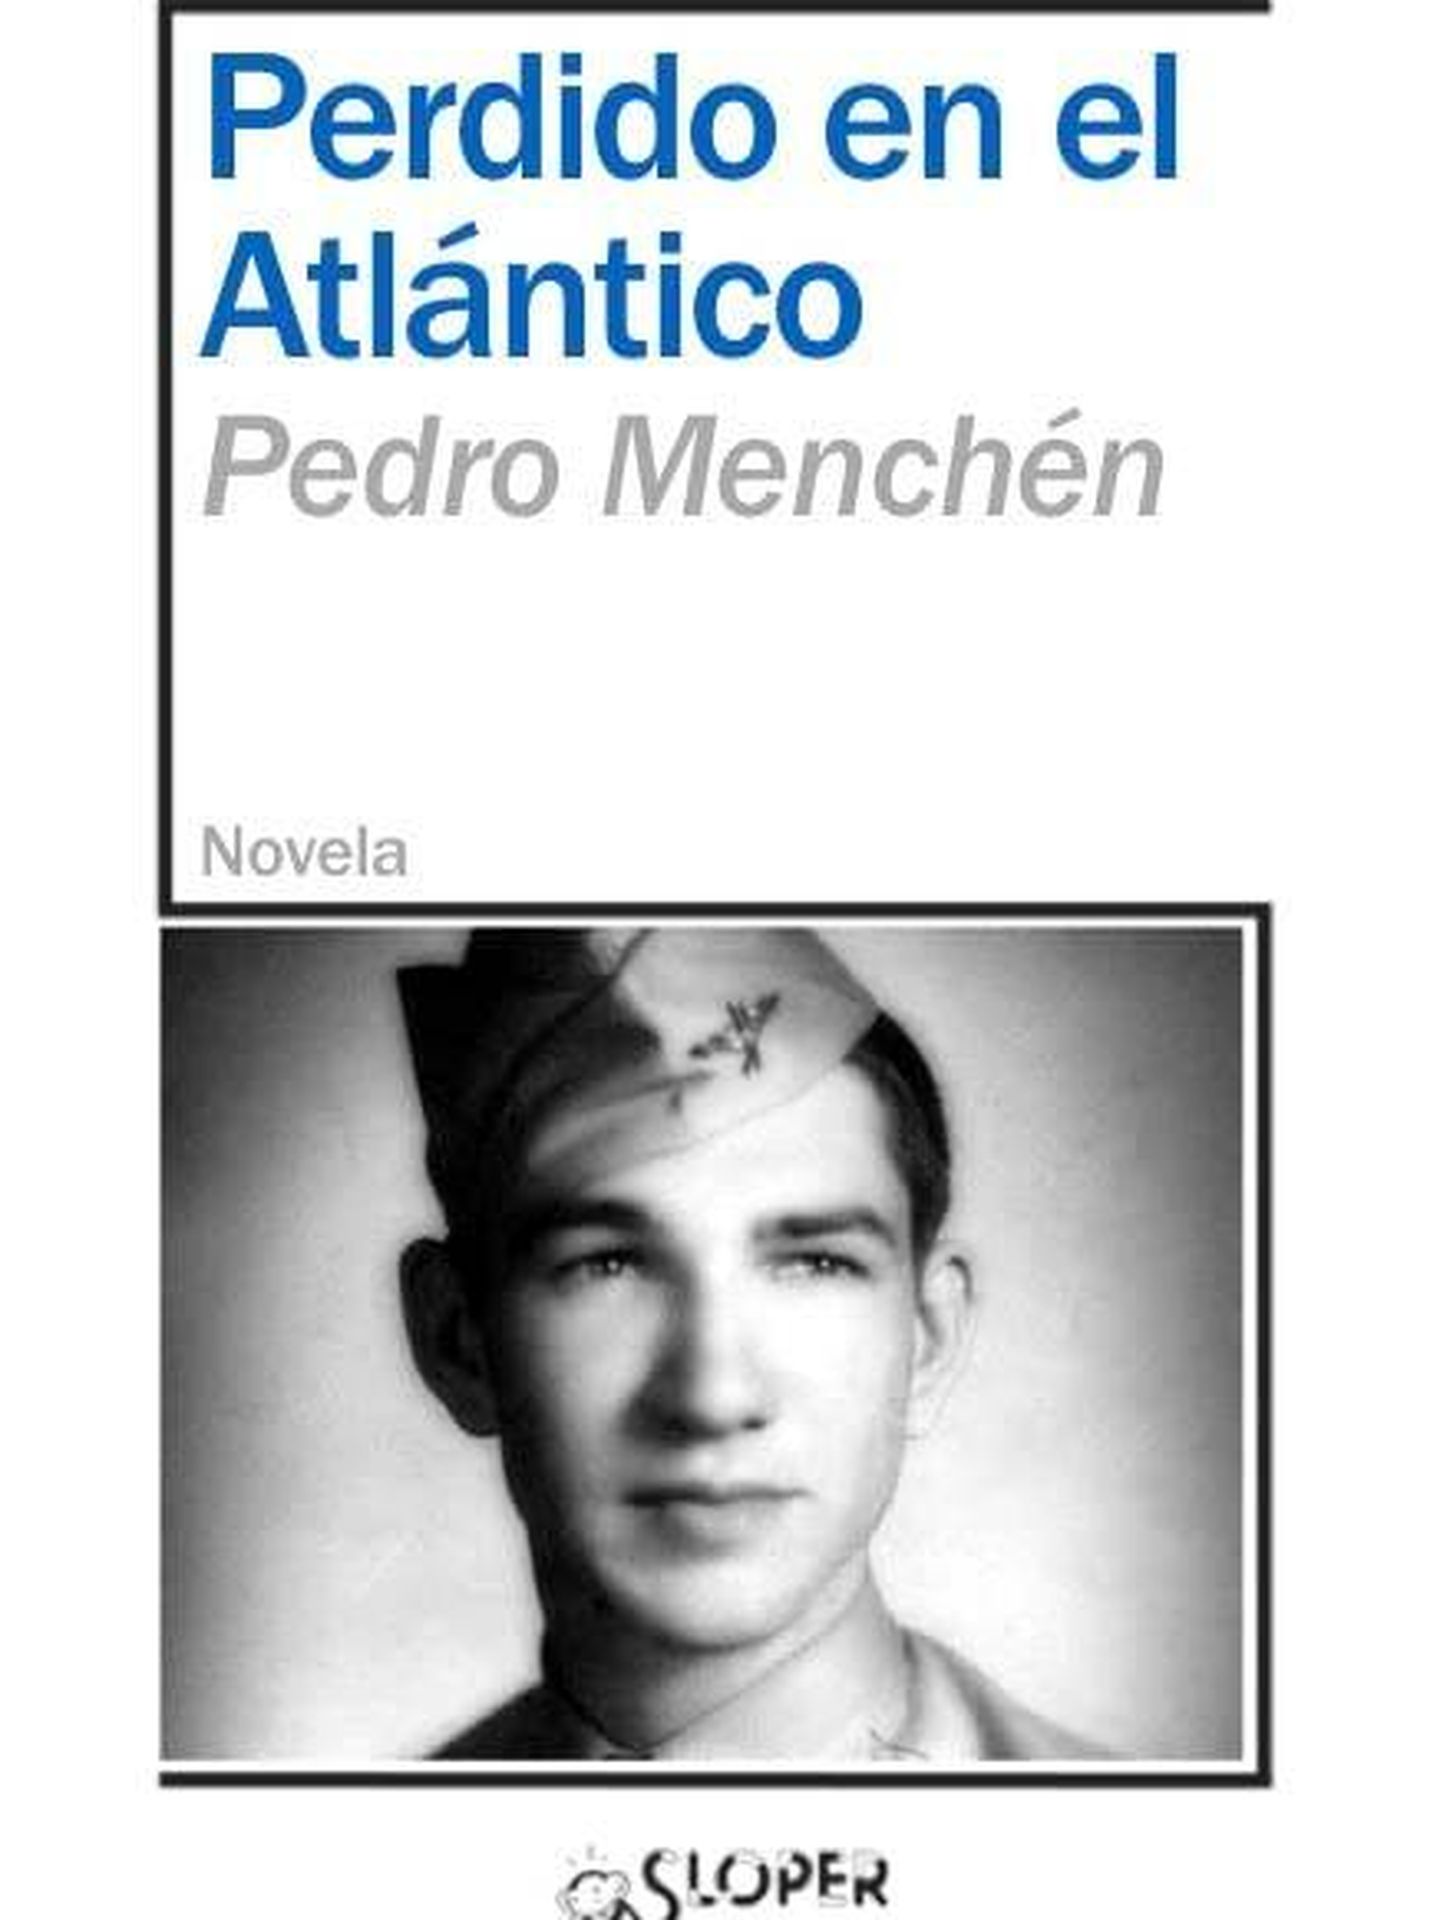 'Perdido en el Atlántico', de Pedro Menchén. (Sloper)